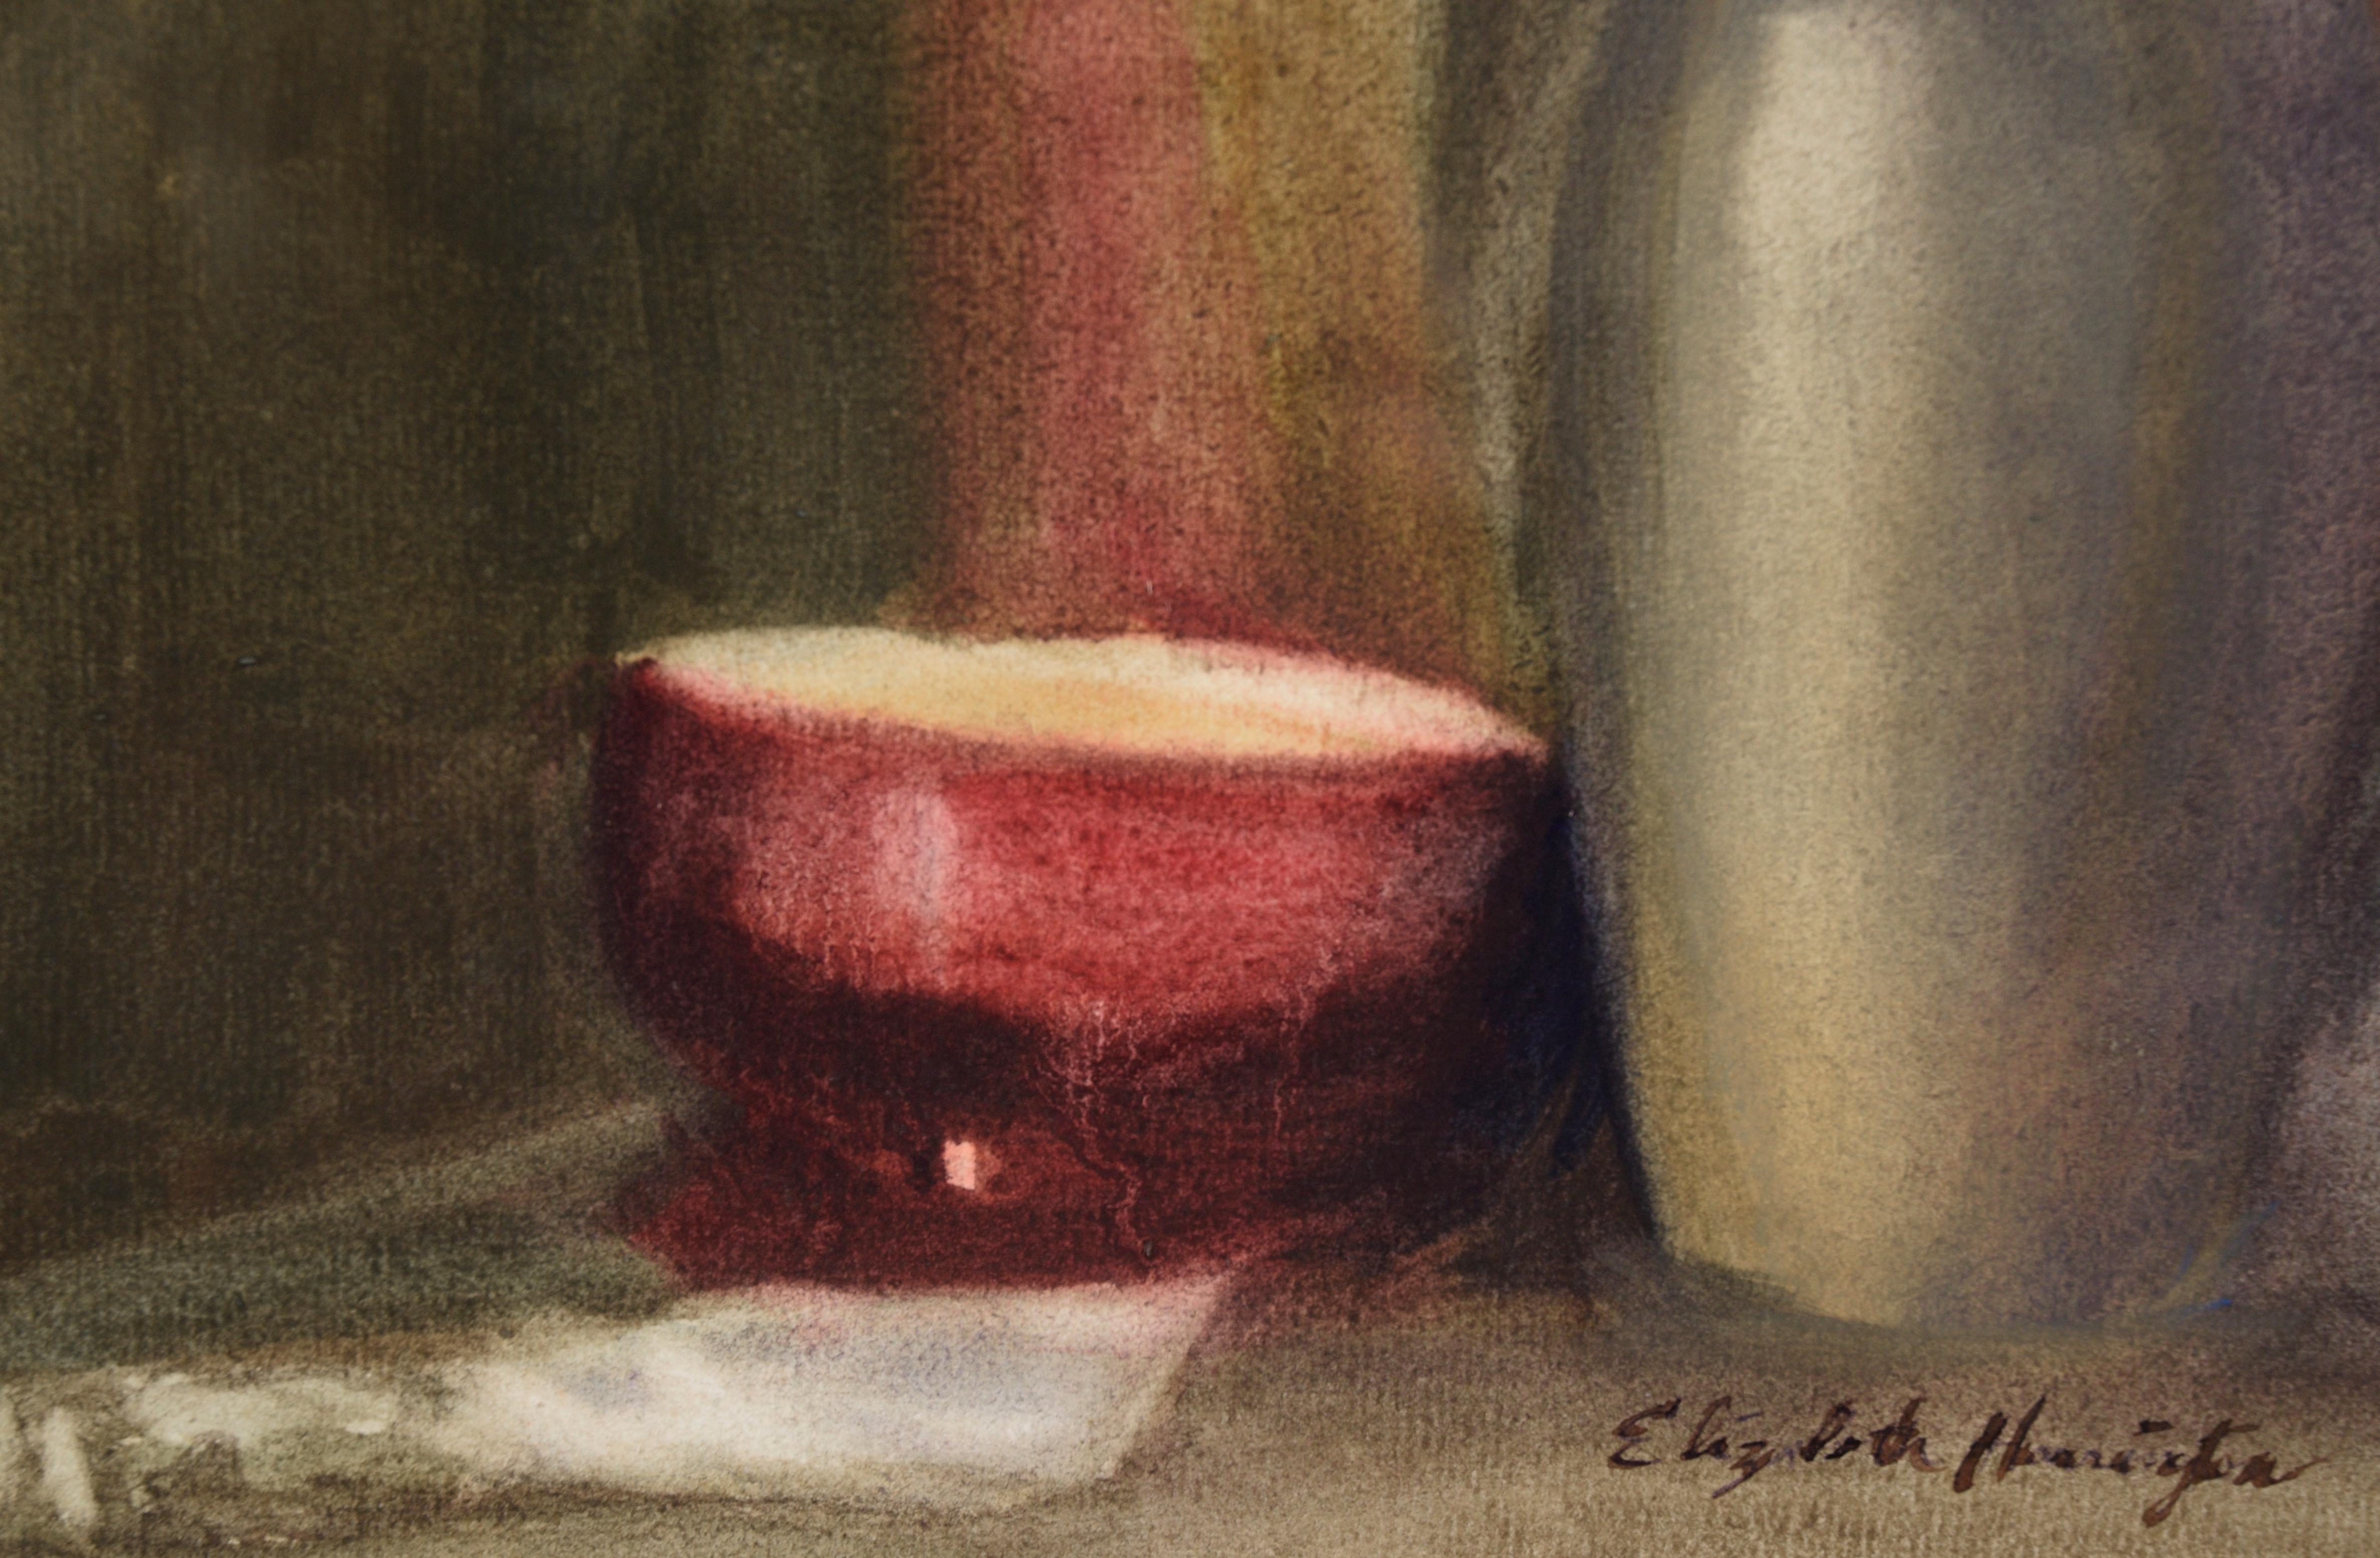 Sumi-e Brushes and Bowl - Still Life by Elizabeth Harrington - American Impressionist Art by Elizabeth 